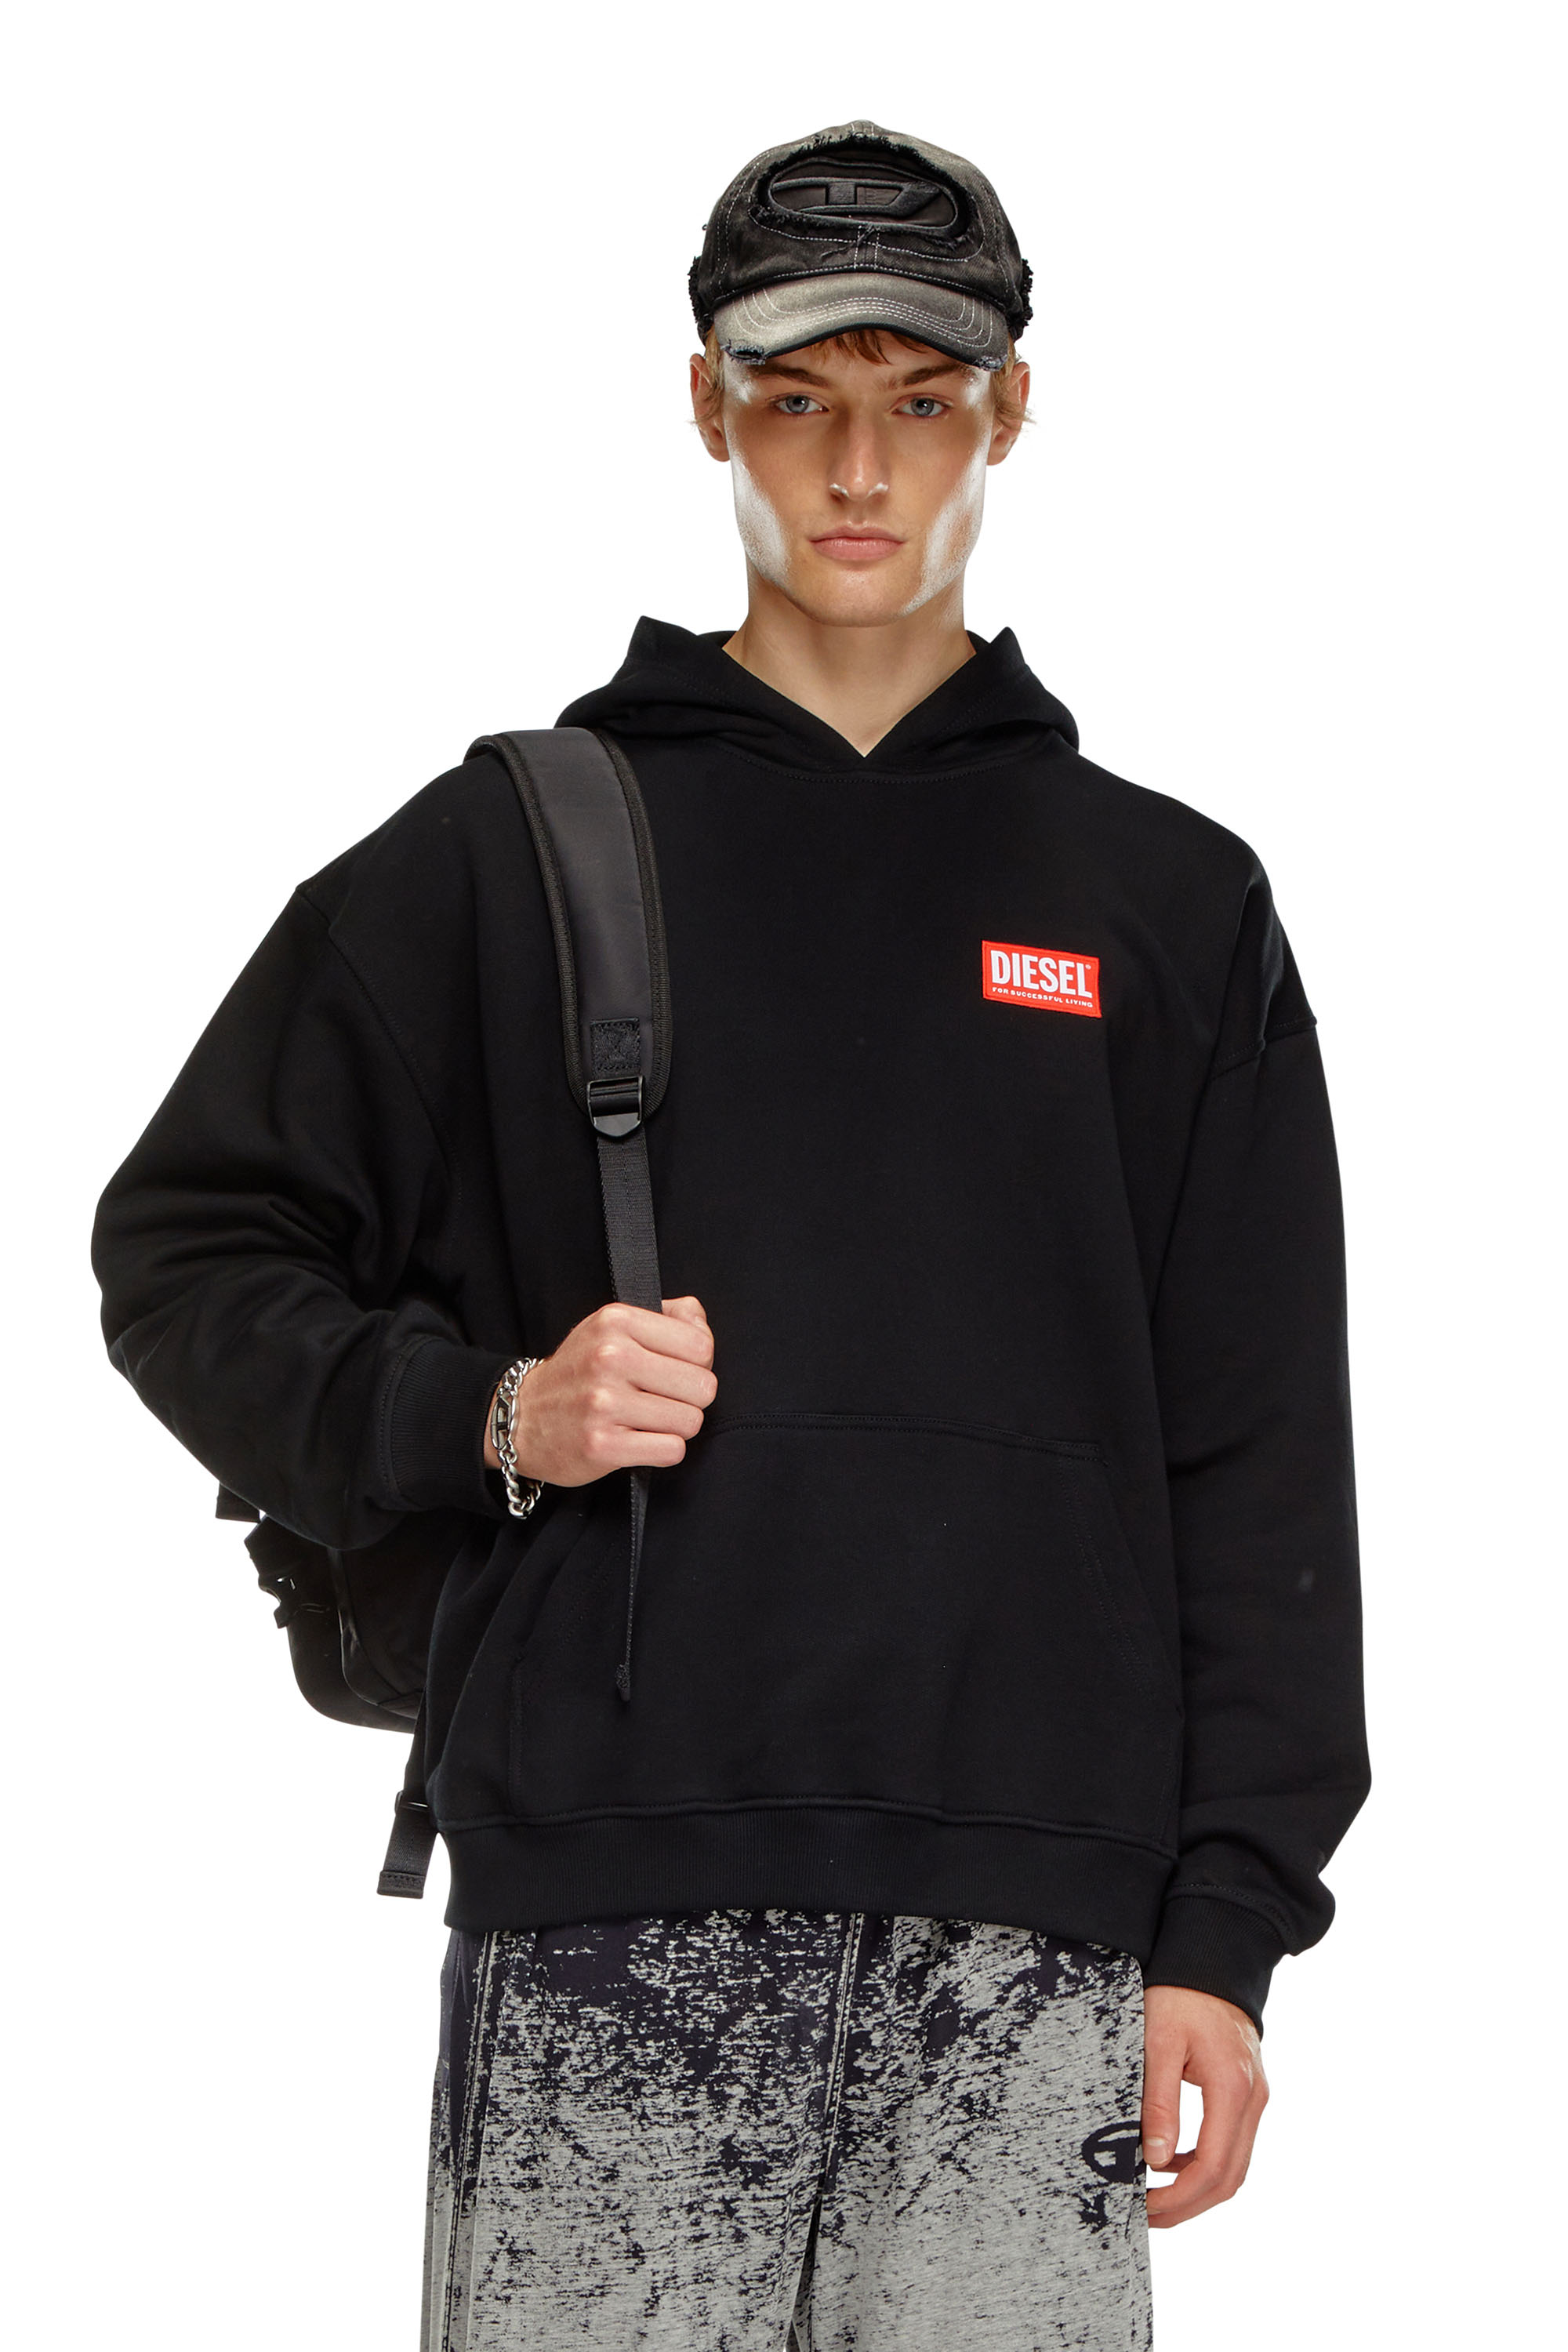 Diesel - S-BOXT-HOOD-LAB, Homme Sweat-shirt à capuche avec étiquette Diesel in Noir - Image 1